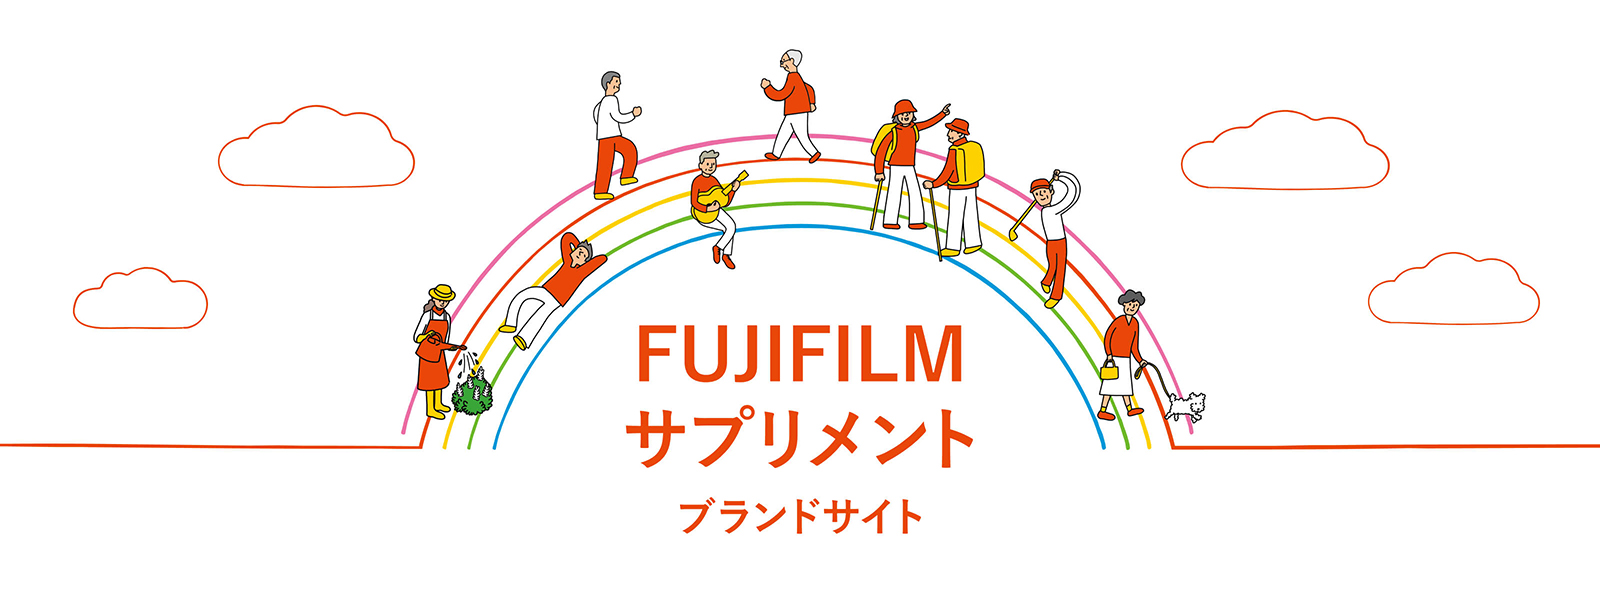 FUJIFILMサプリメントブランドサイト